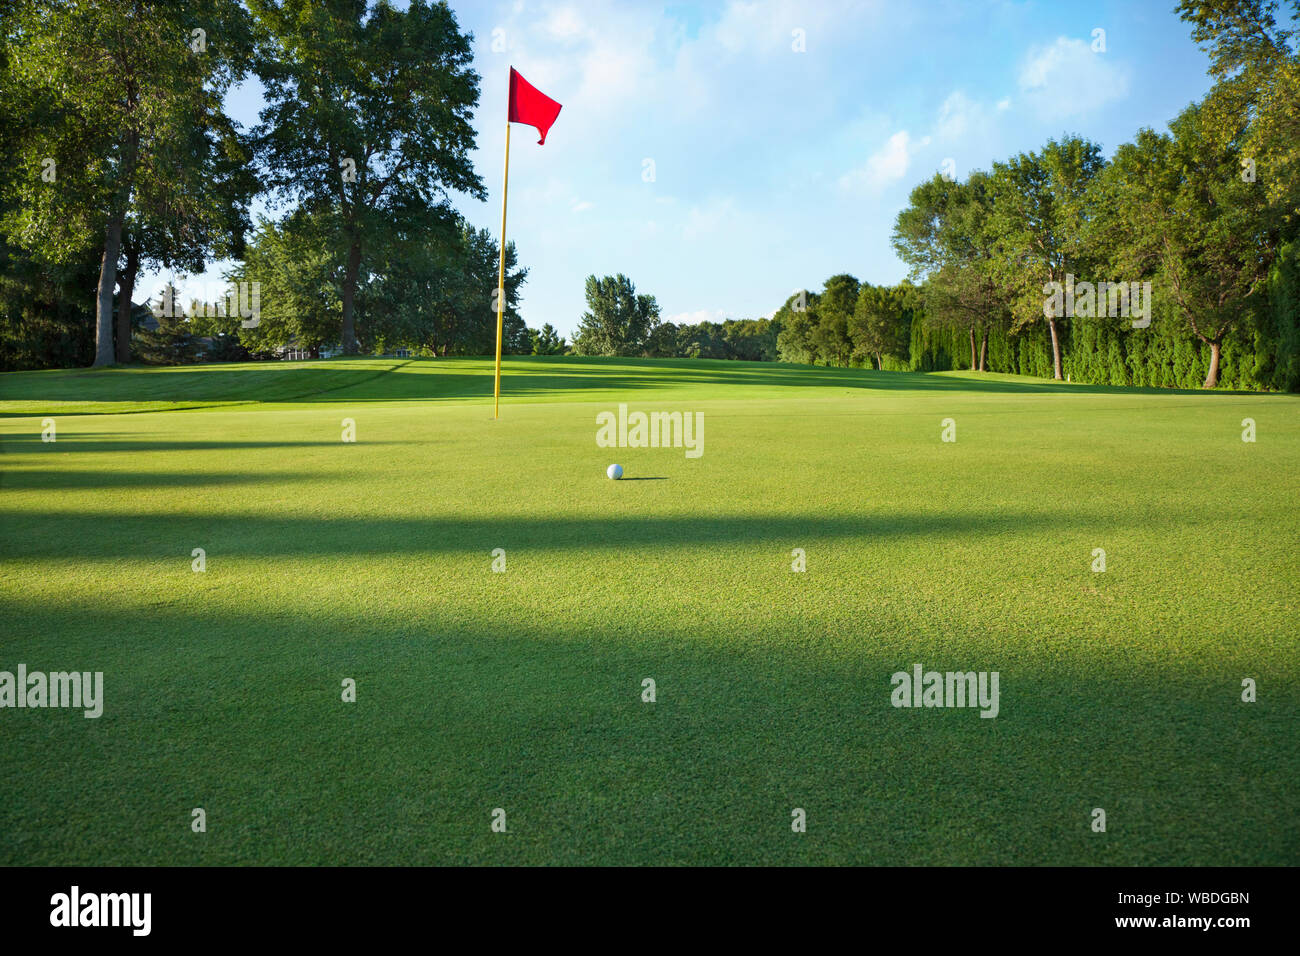 Ángulo de visión baja de un golf con bandera roja y la bola en una tarde soleada Foto de stock